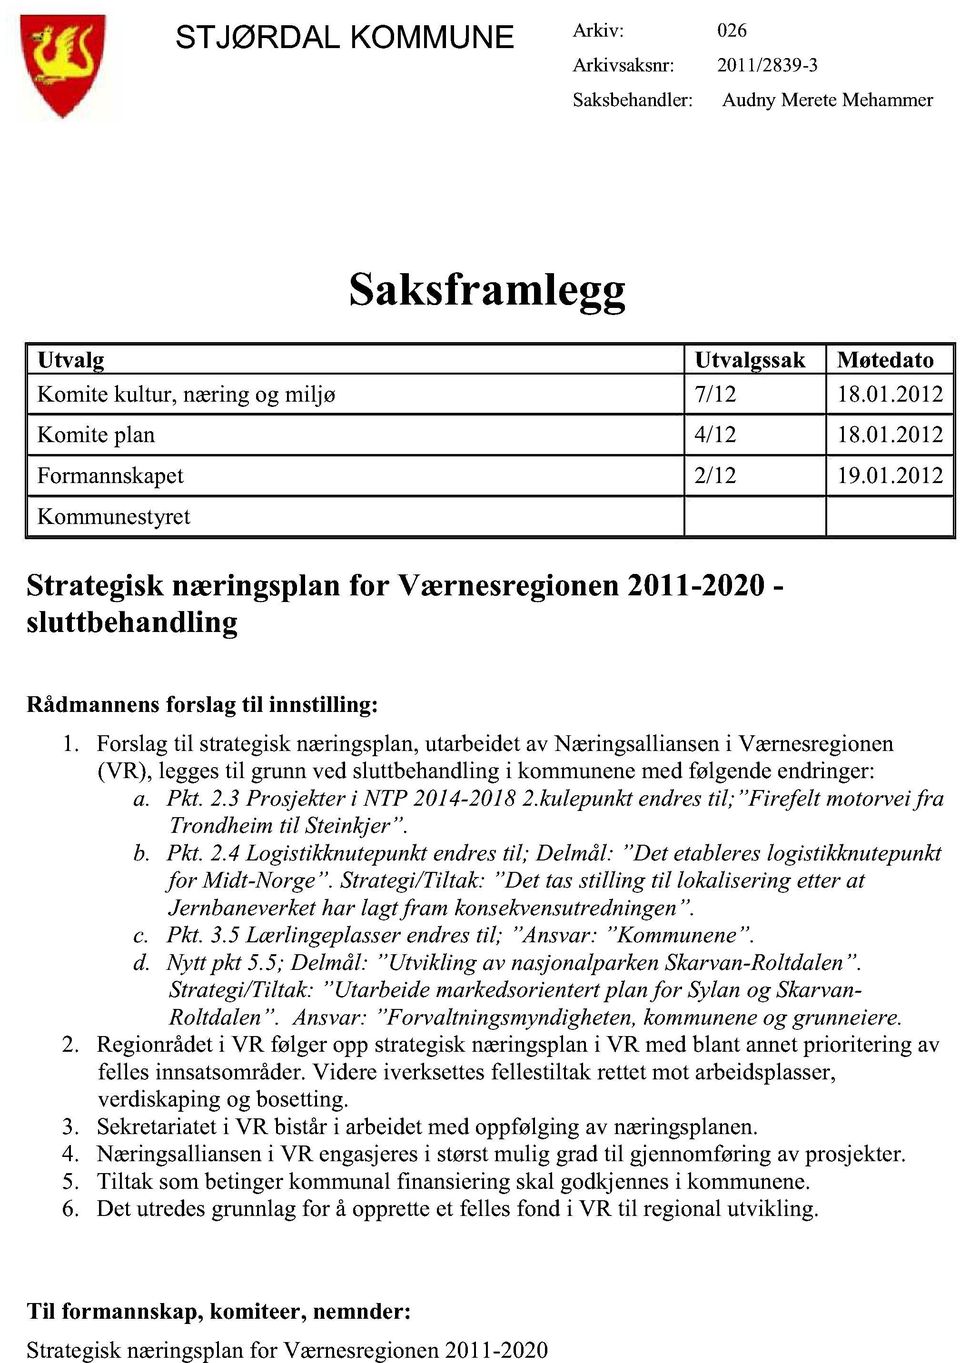 Forslagtil strategisknæringsplan,utarbeidetav Næringsallianseni Værnesregionen (VR), leggestil grunnvedsluttbehandlingi kommunenemedfølgendeendringer: a. Pkt. 2.3 Prosjekteri NTP2014-20182.